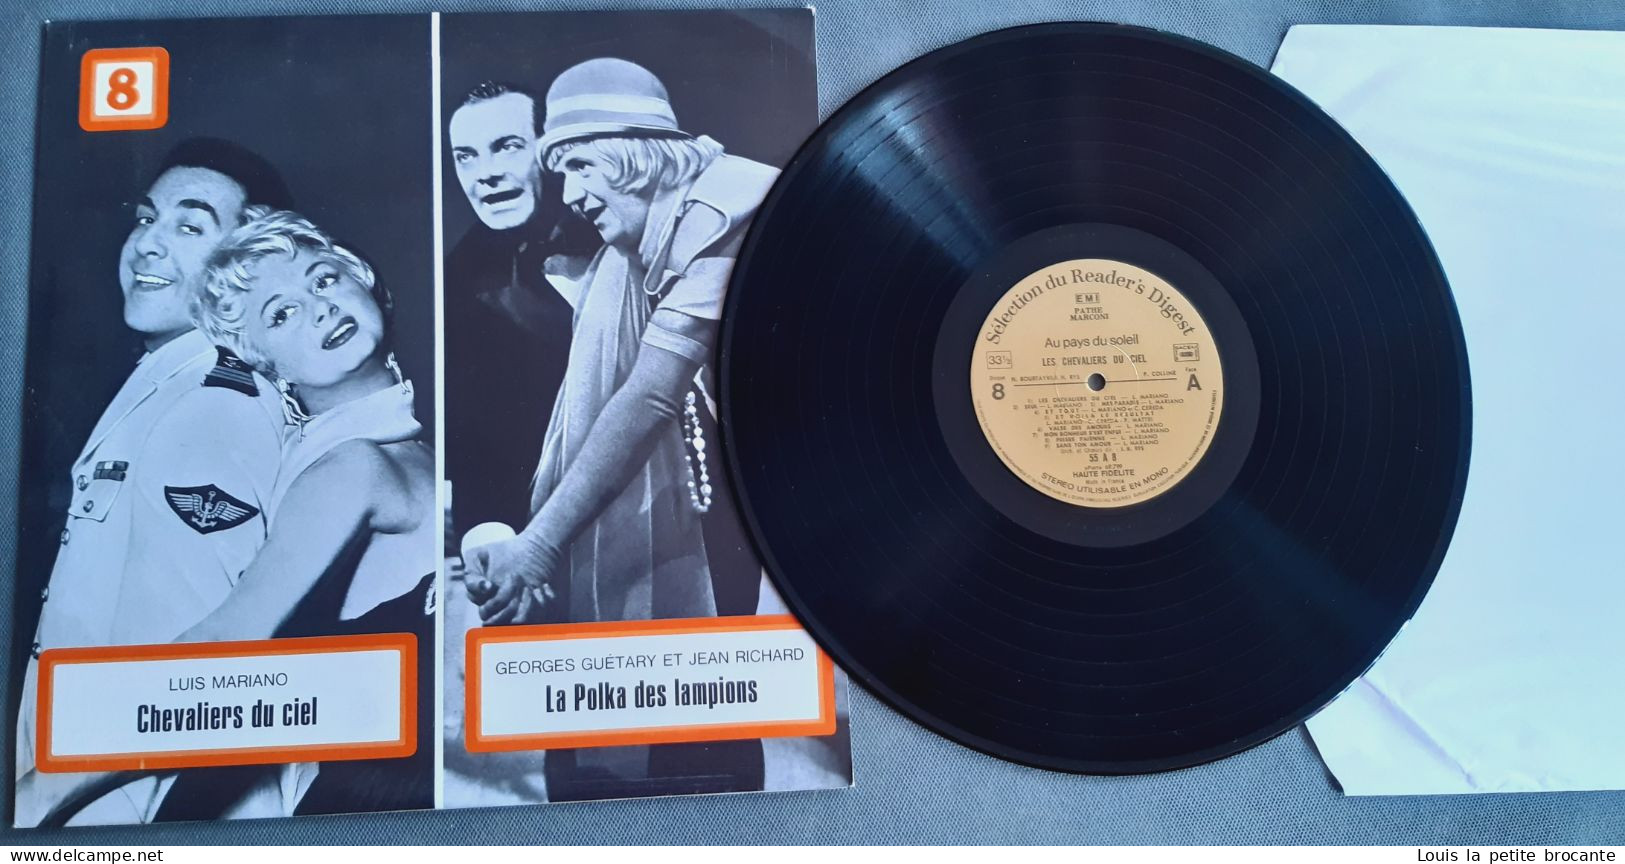 Coffret de 9 disques vinyles, AU PAYS DU SOLEIL, L'Operette ses étoiles ses succès, PATHE MARCONI - EMI.